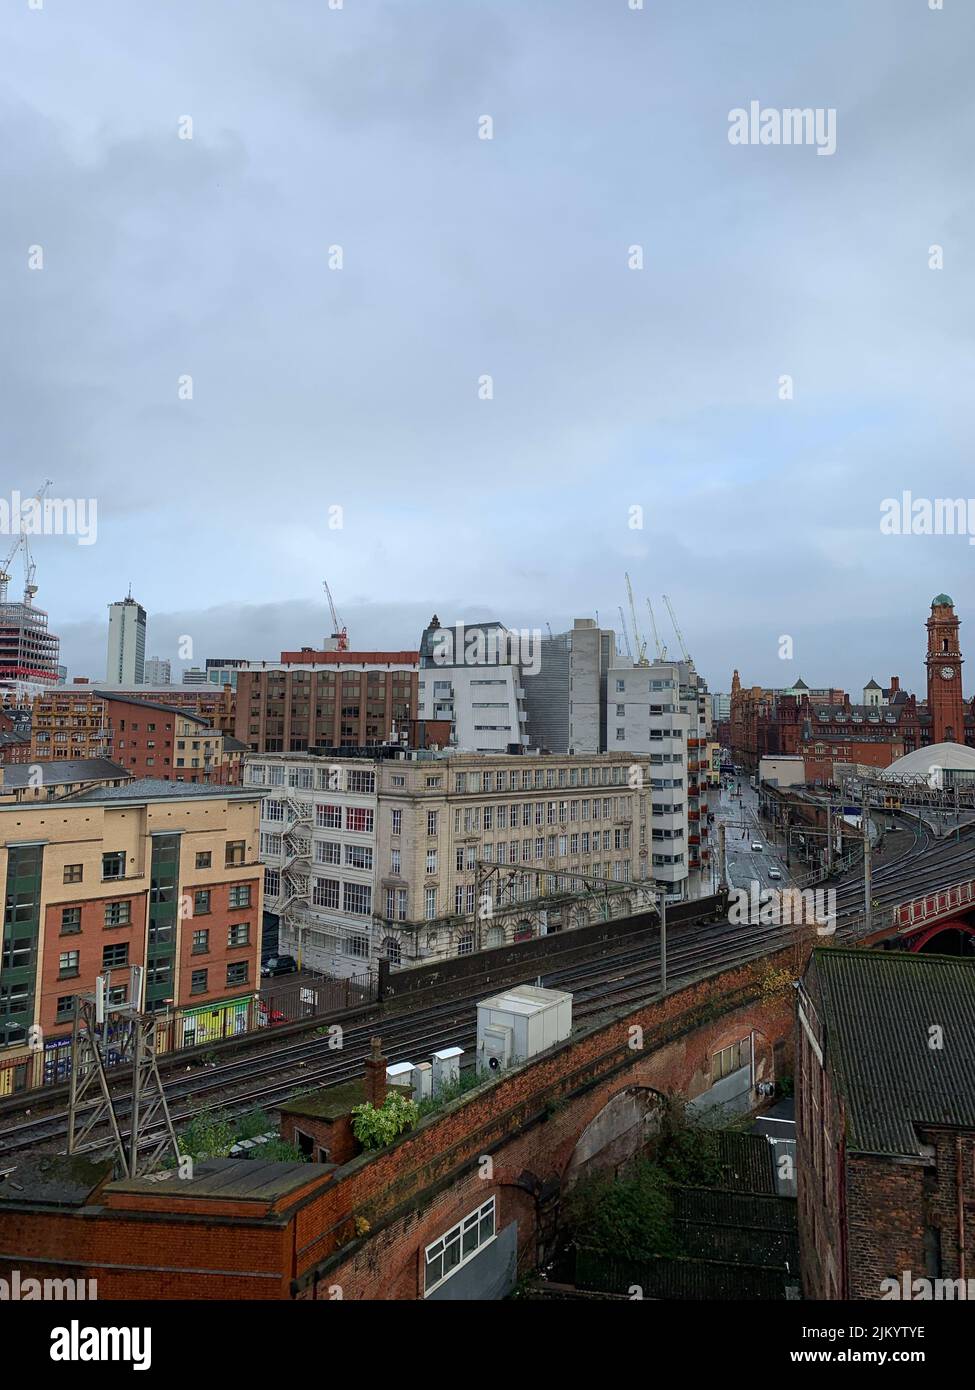 Eine Szenerie von städtischen Gebäuden und Neubauten mit Kränen in Manchester, England, Großbritannien Stockfoto